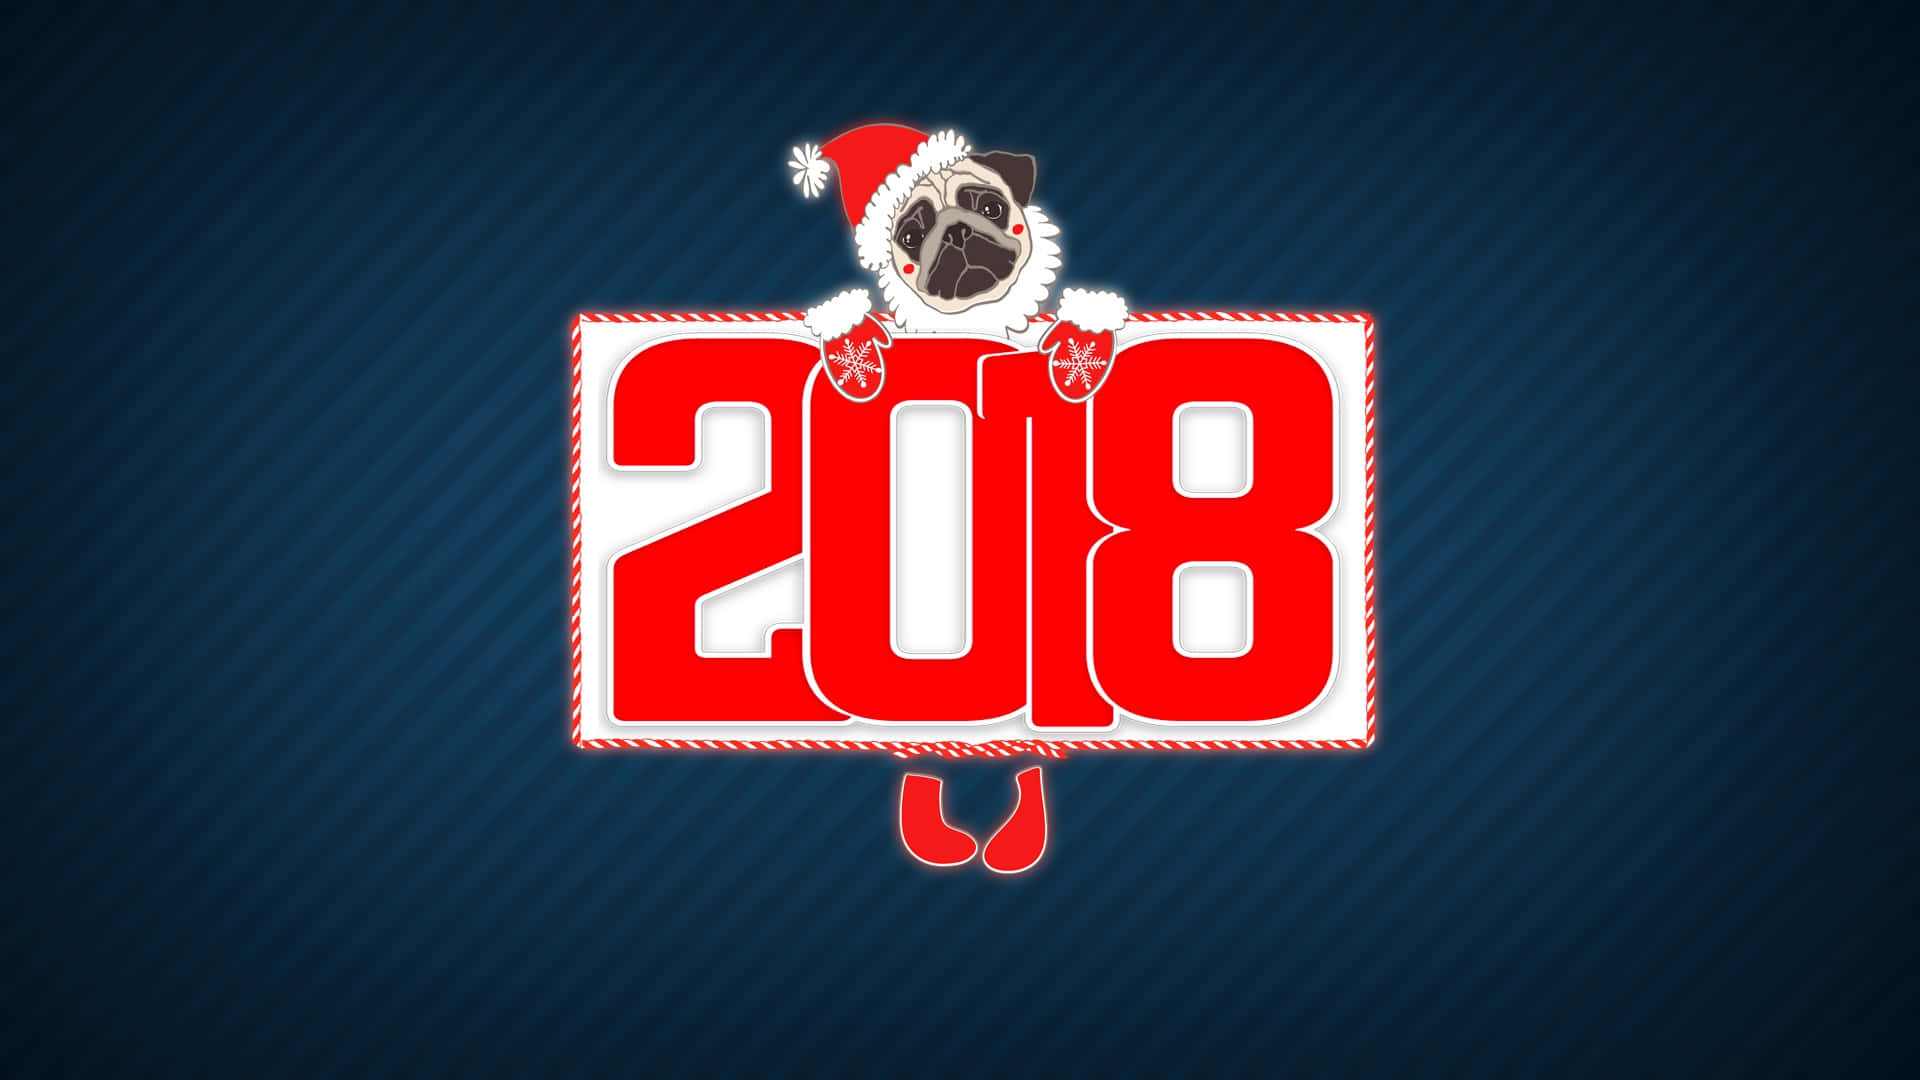 2018niedlicher Hund Wallpaper